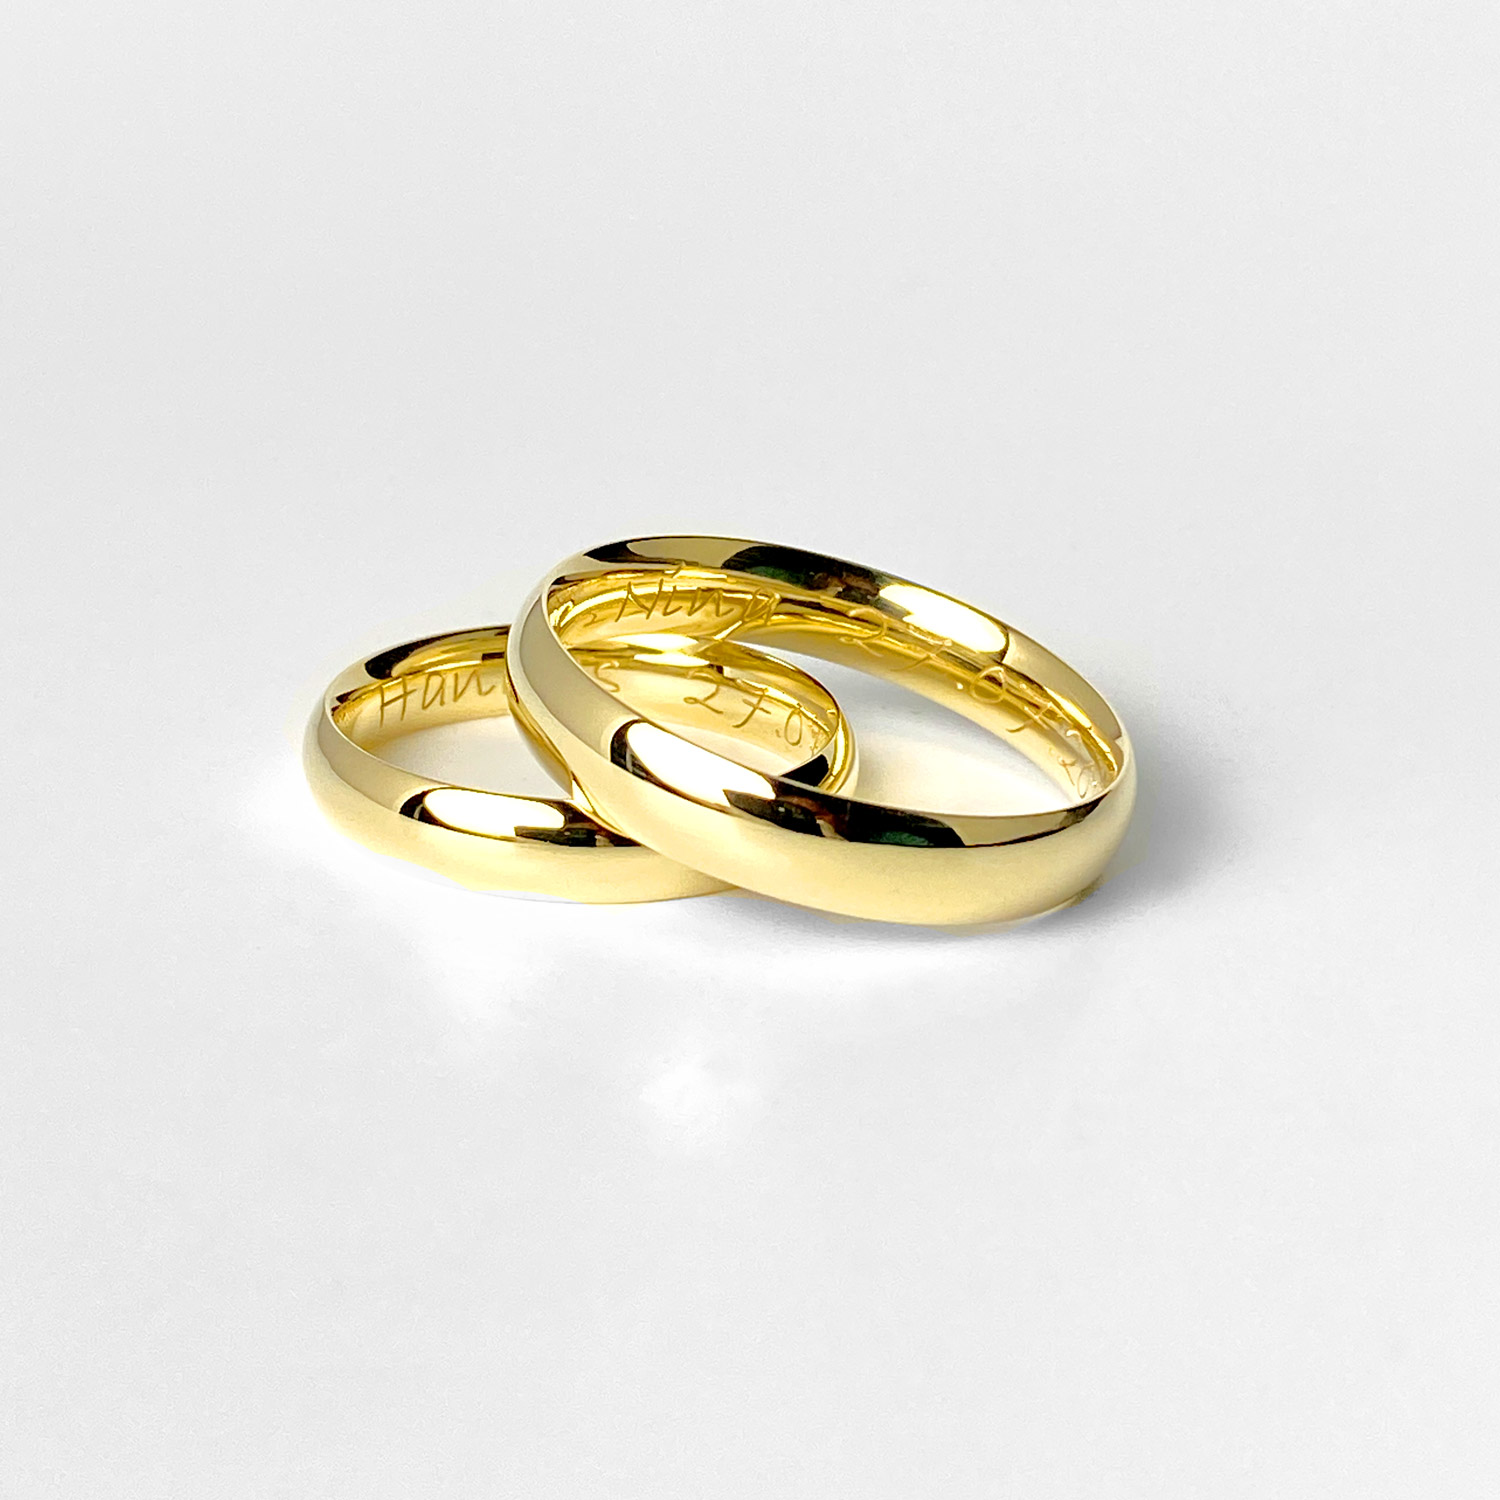 Zeitlos elegante Ehering oder Trauringe in Gold oder Silber.